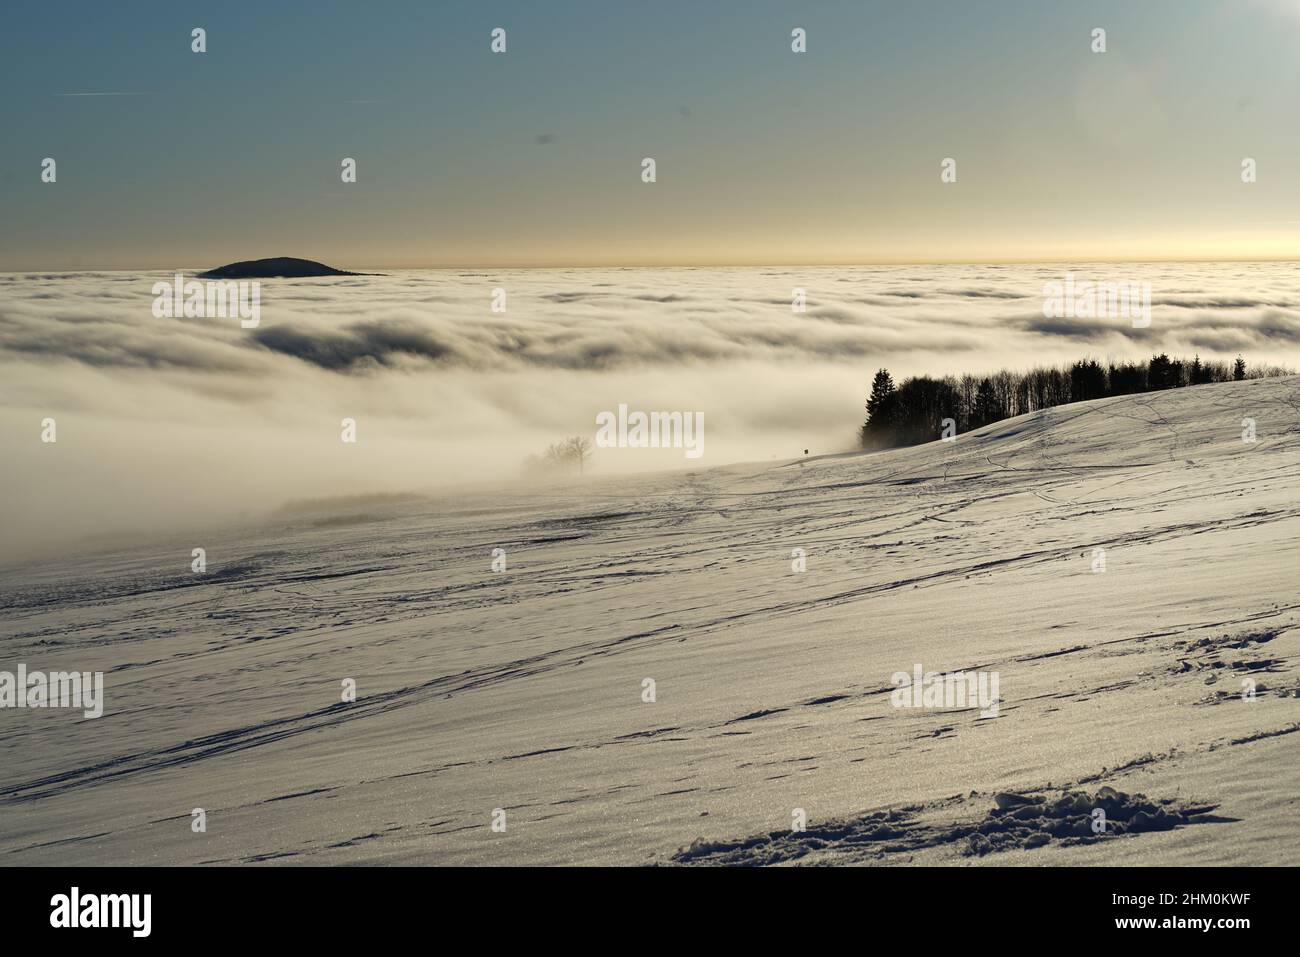 Das Konzept der Entspannung in den Bergen im Winter im Schnee auf Skiern, Snowboards oder Schlitten, Wandern unter der untergehenden Sonne bei Sonnenuntergang auf der Stockfoto